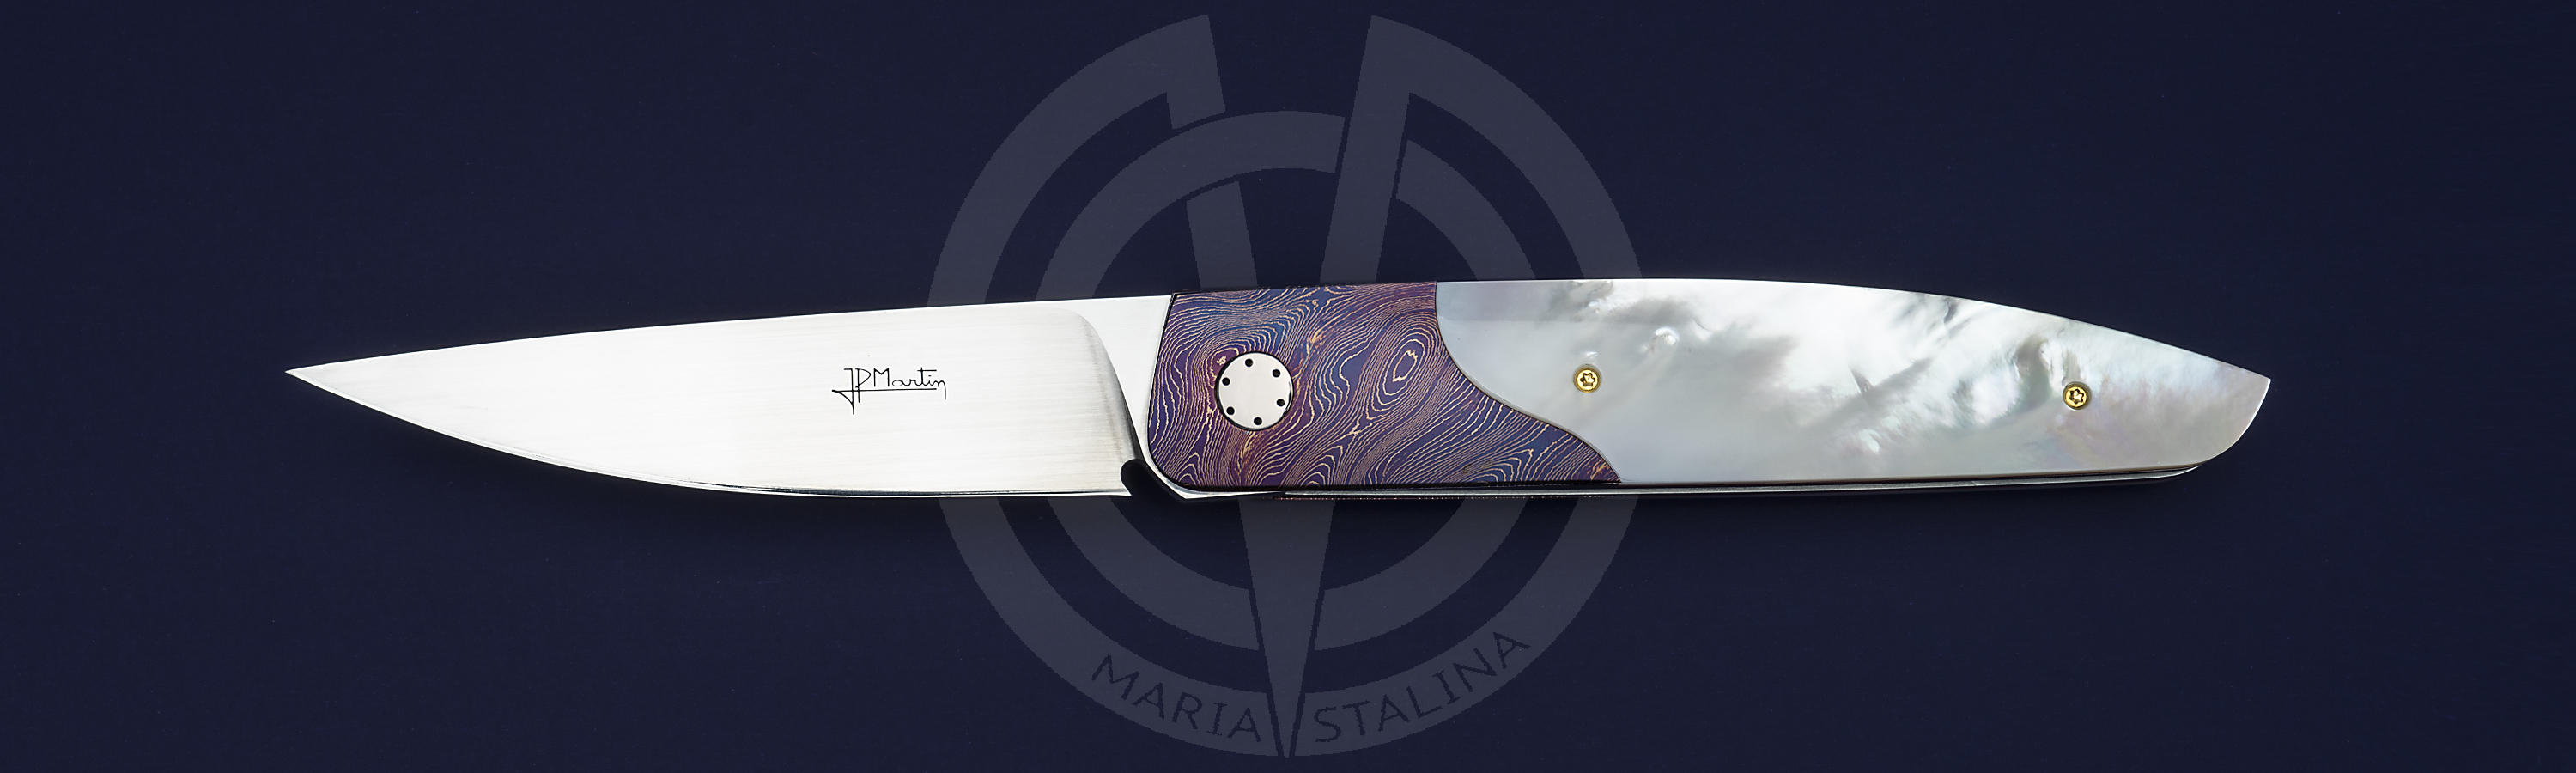 Элегантный нож Jean-Pierre Martin City с тимаскусом и перламутром